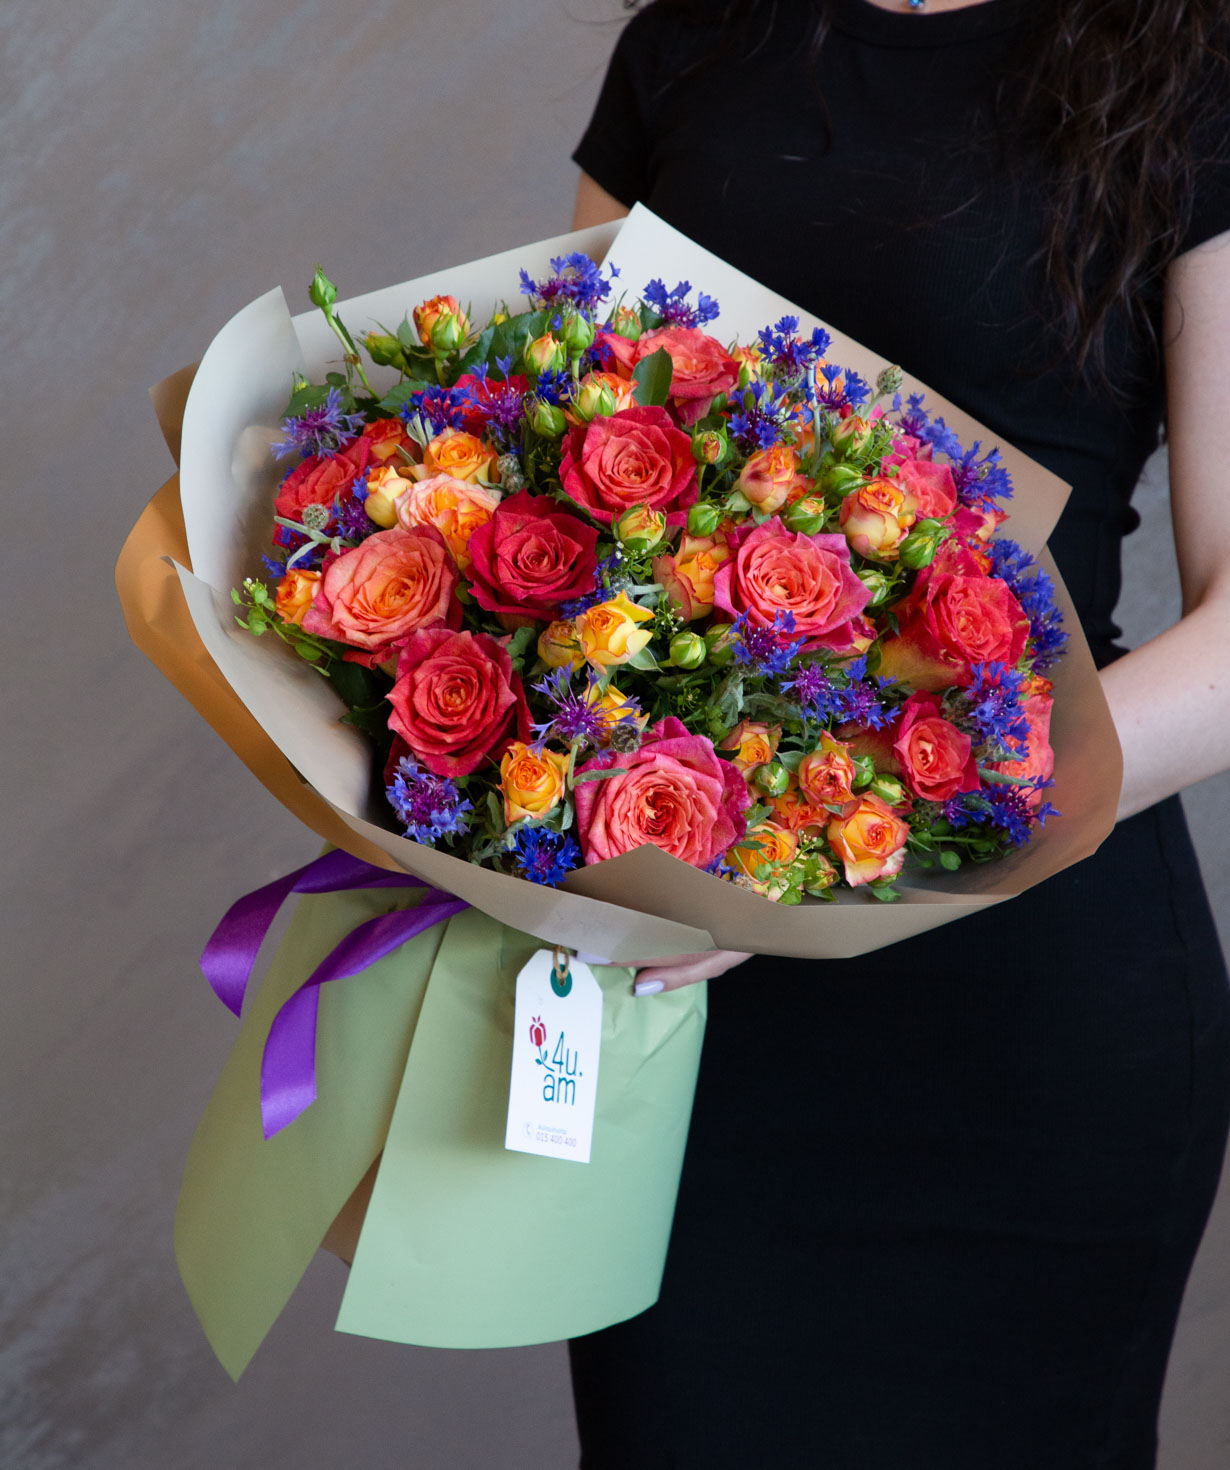 Ծաղկեփունջ «Վիլց» վարդերով և դաշտային ծաղիկներով